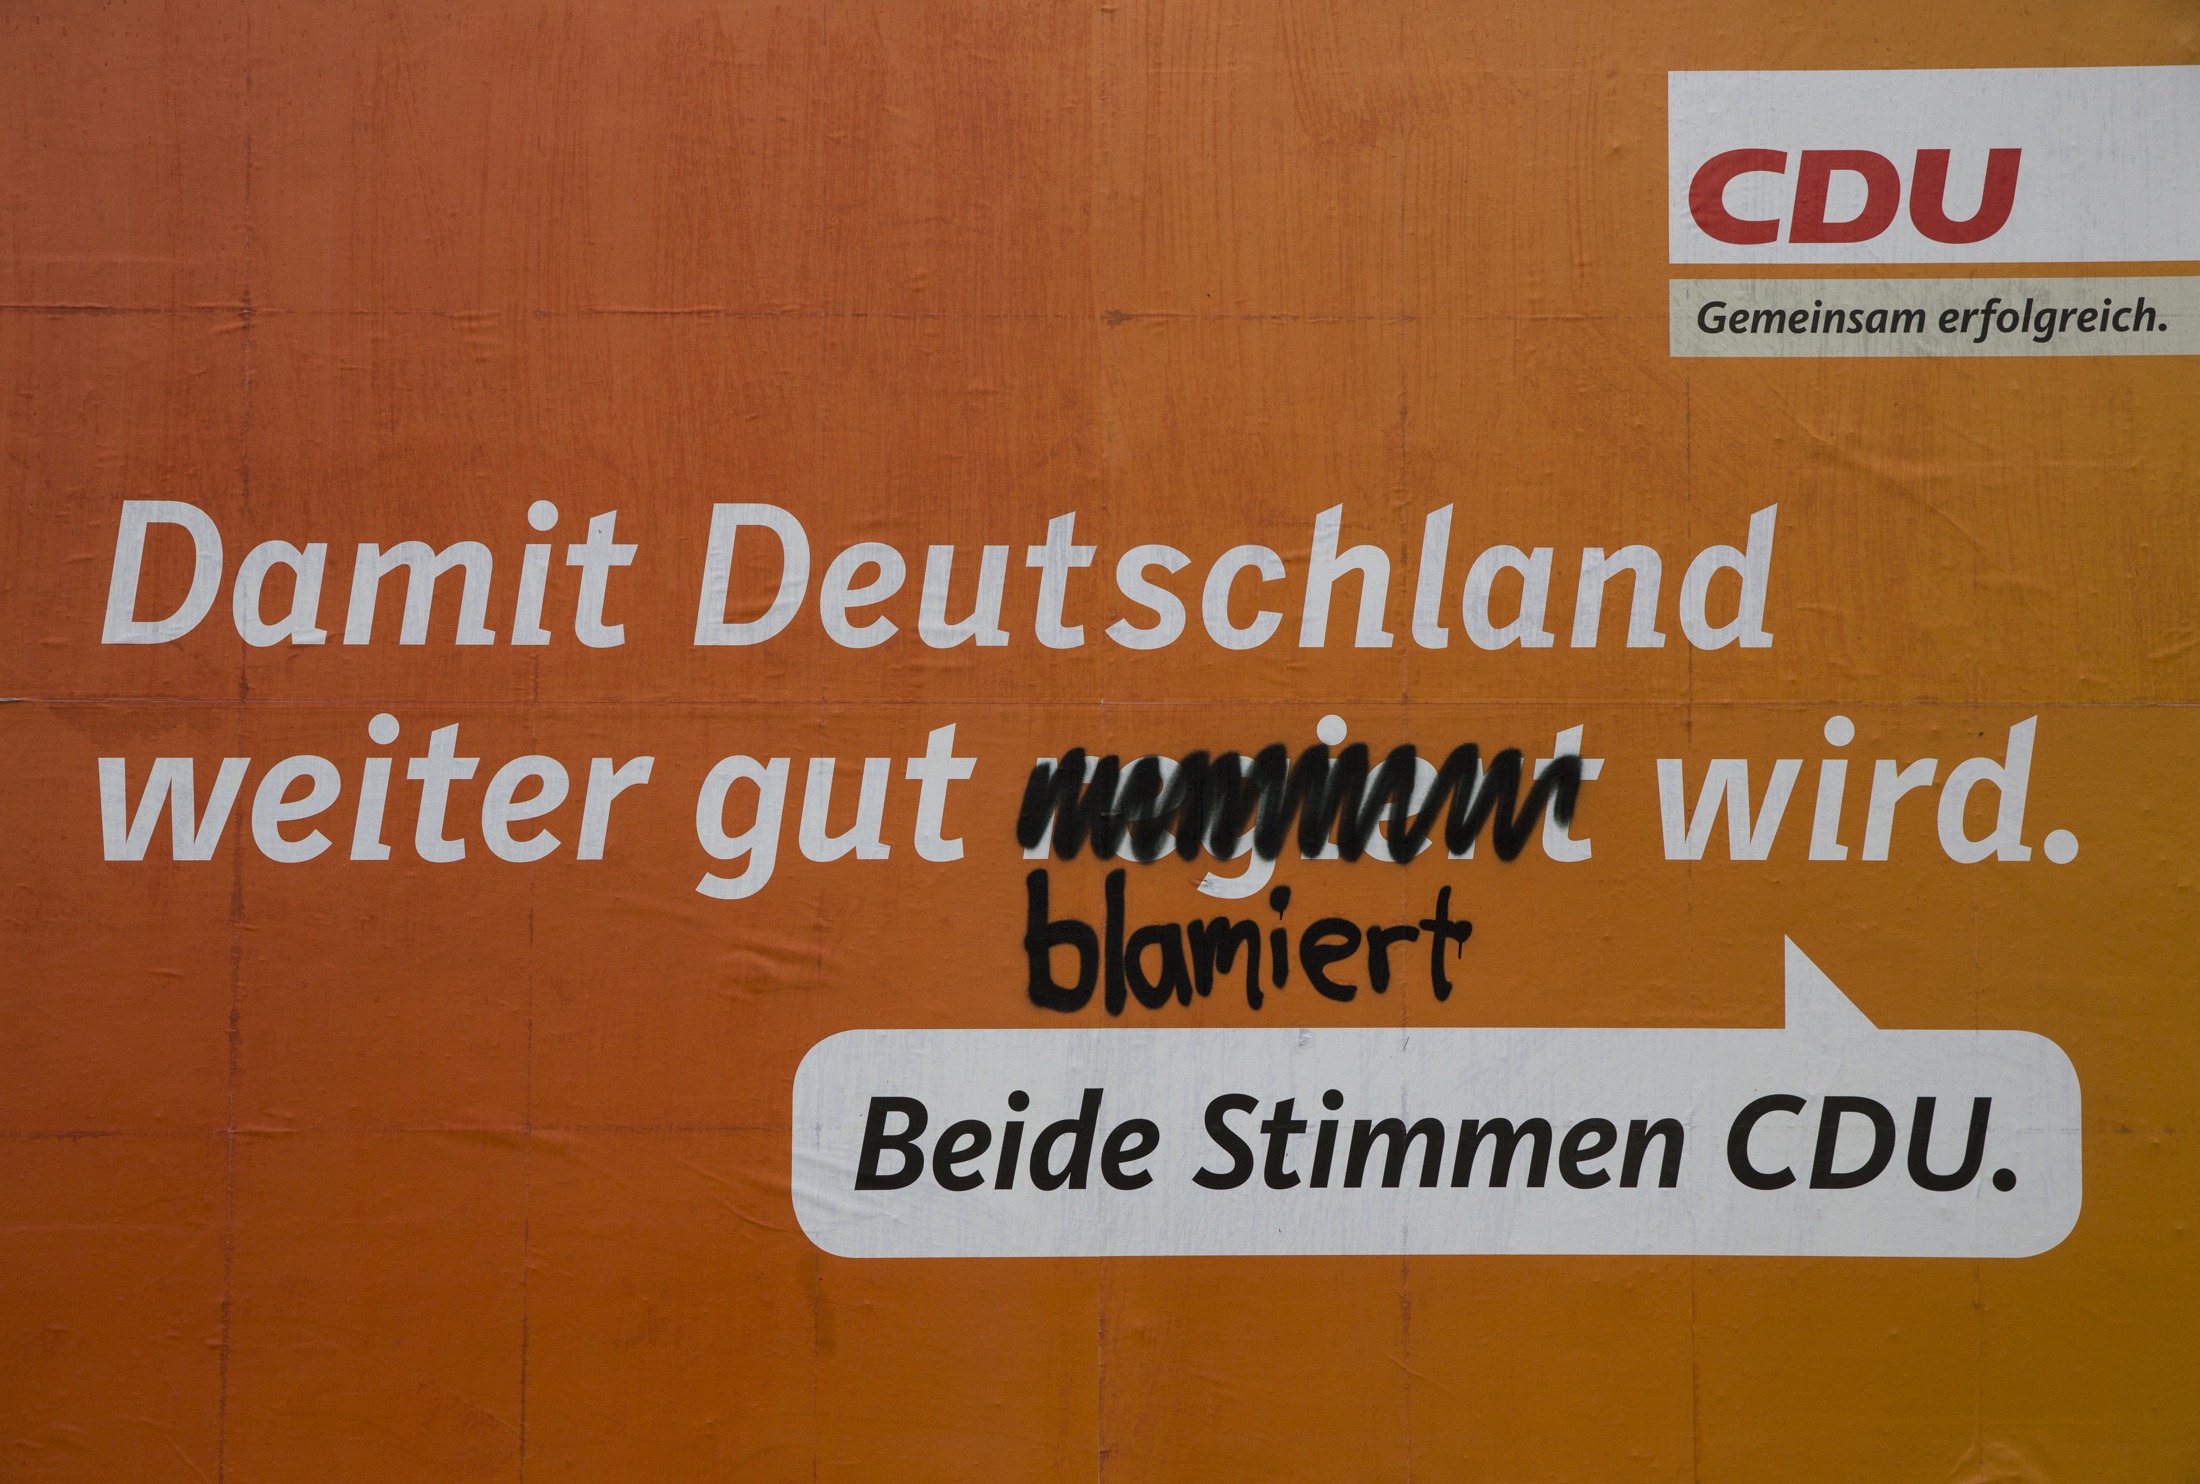 Η αφίσα του CDU (κόμμα Μέρκελ): Το μήνυμα 